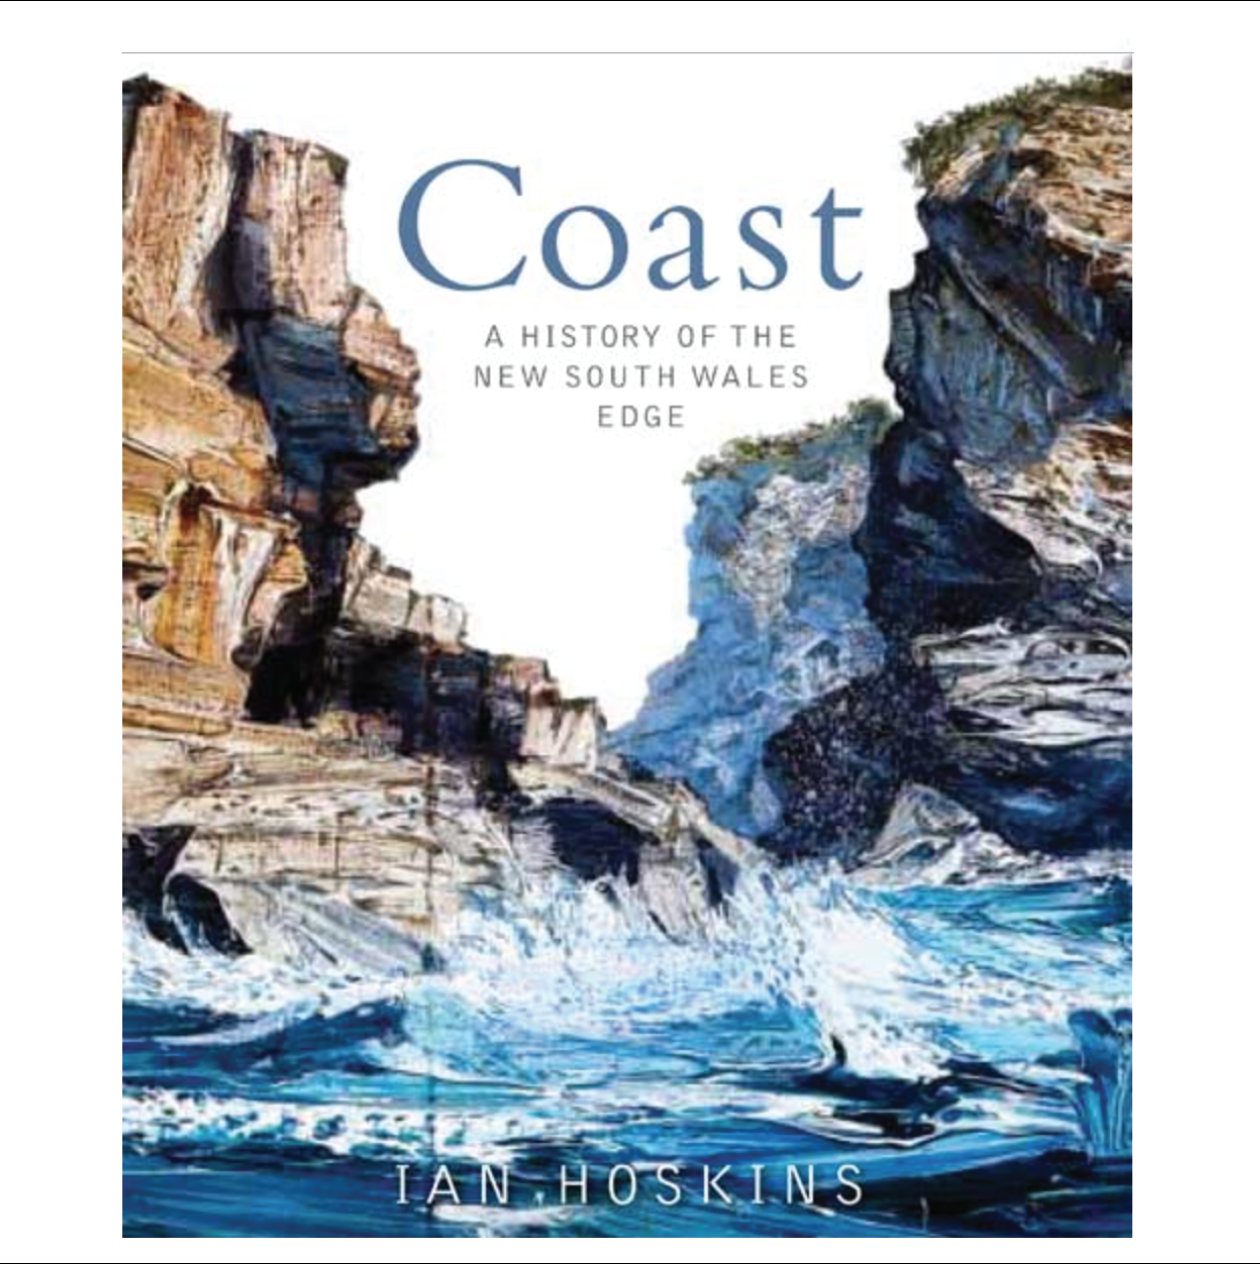 Coast: A History of the New South Wales Edge. By Ian Hoskins